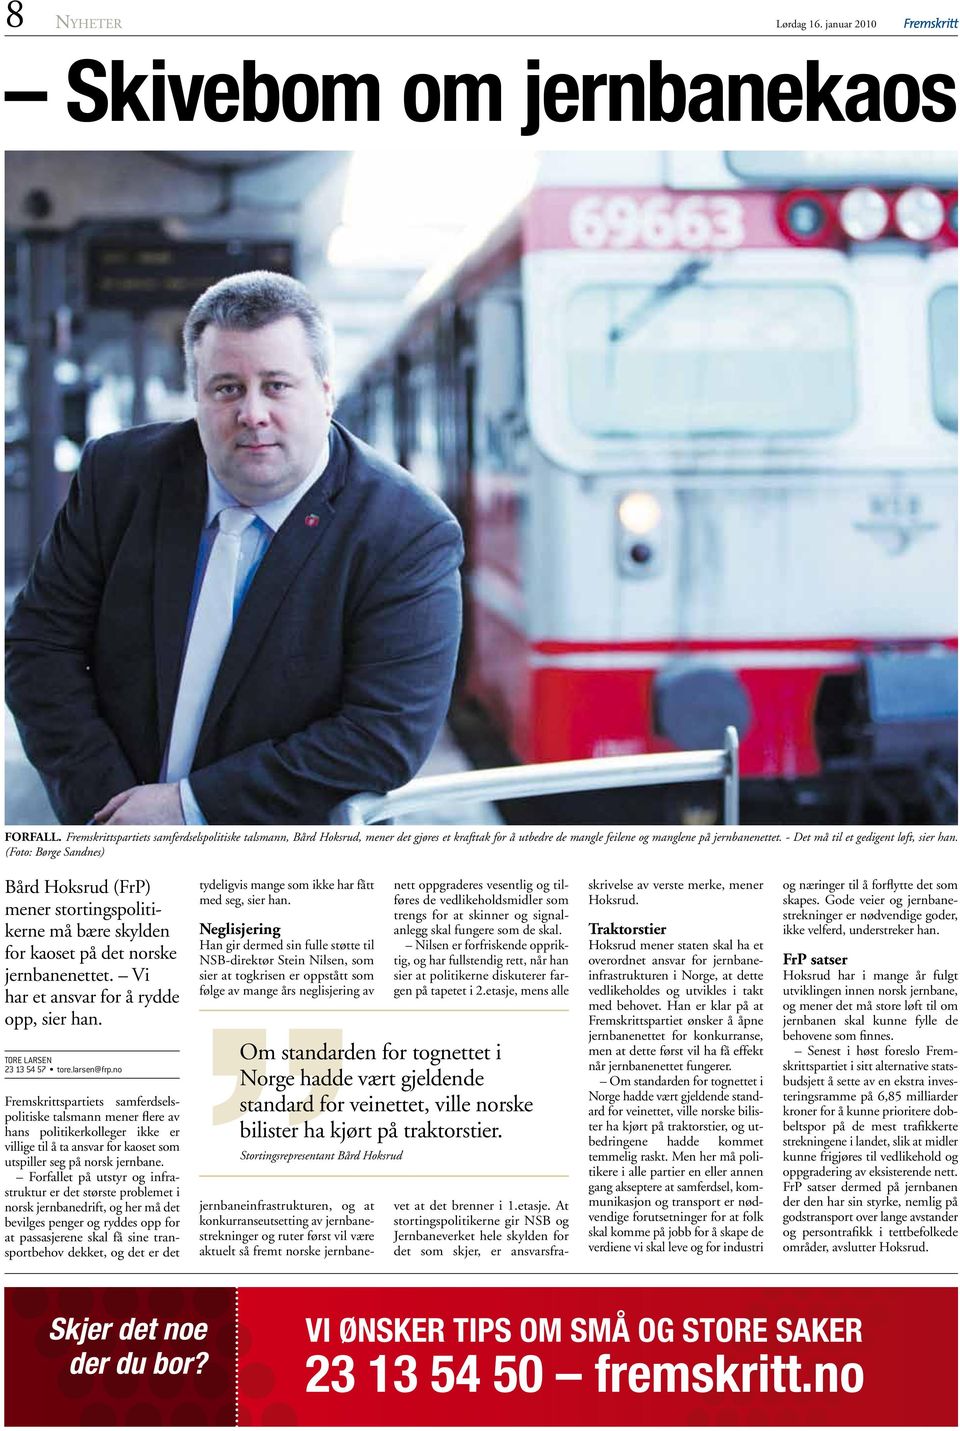 (Foto: Børge Sandnes) Bård Hoksrud (FrP) mener stortingspolitikerne må bære skylden for kaoset på det norske jernbanenettet. Vi har et ansvar for å rydde opp, sier han. TORE LARSEN 23 13 54 57 tore.